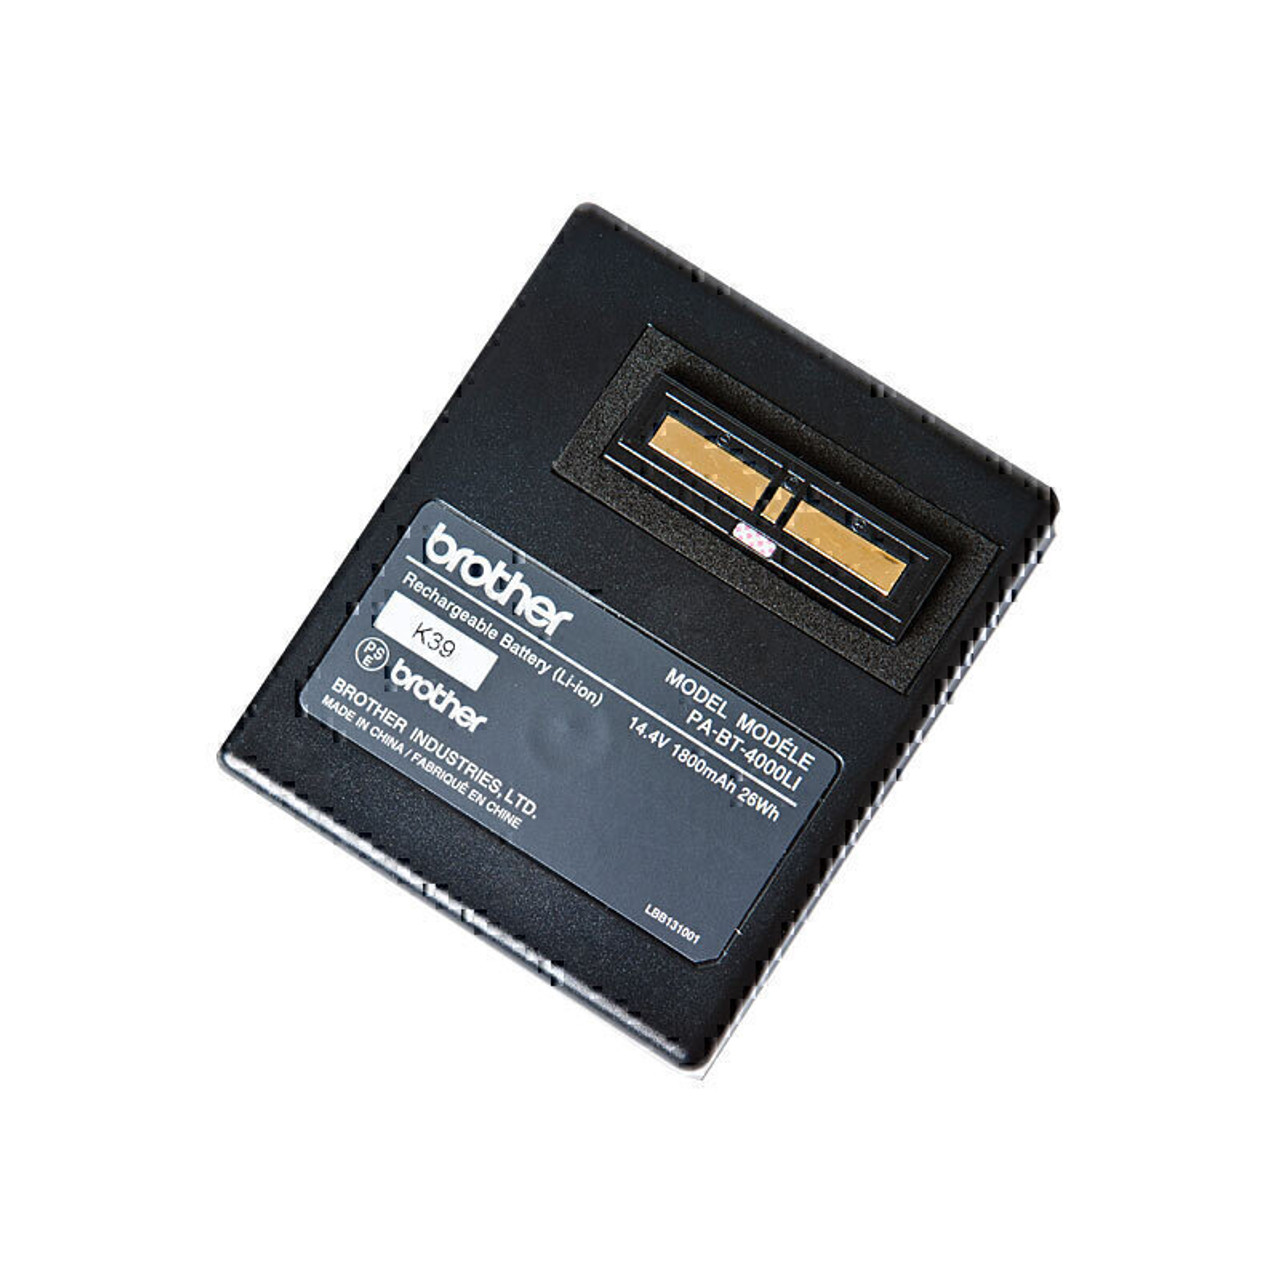 BA-E001 - Batterie rechargeable, Accessoires